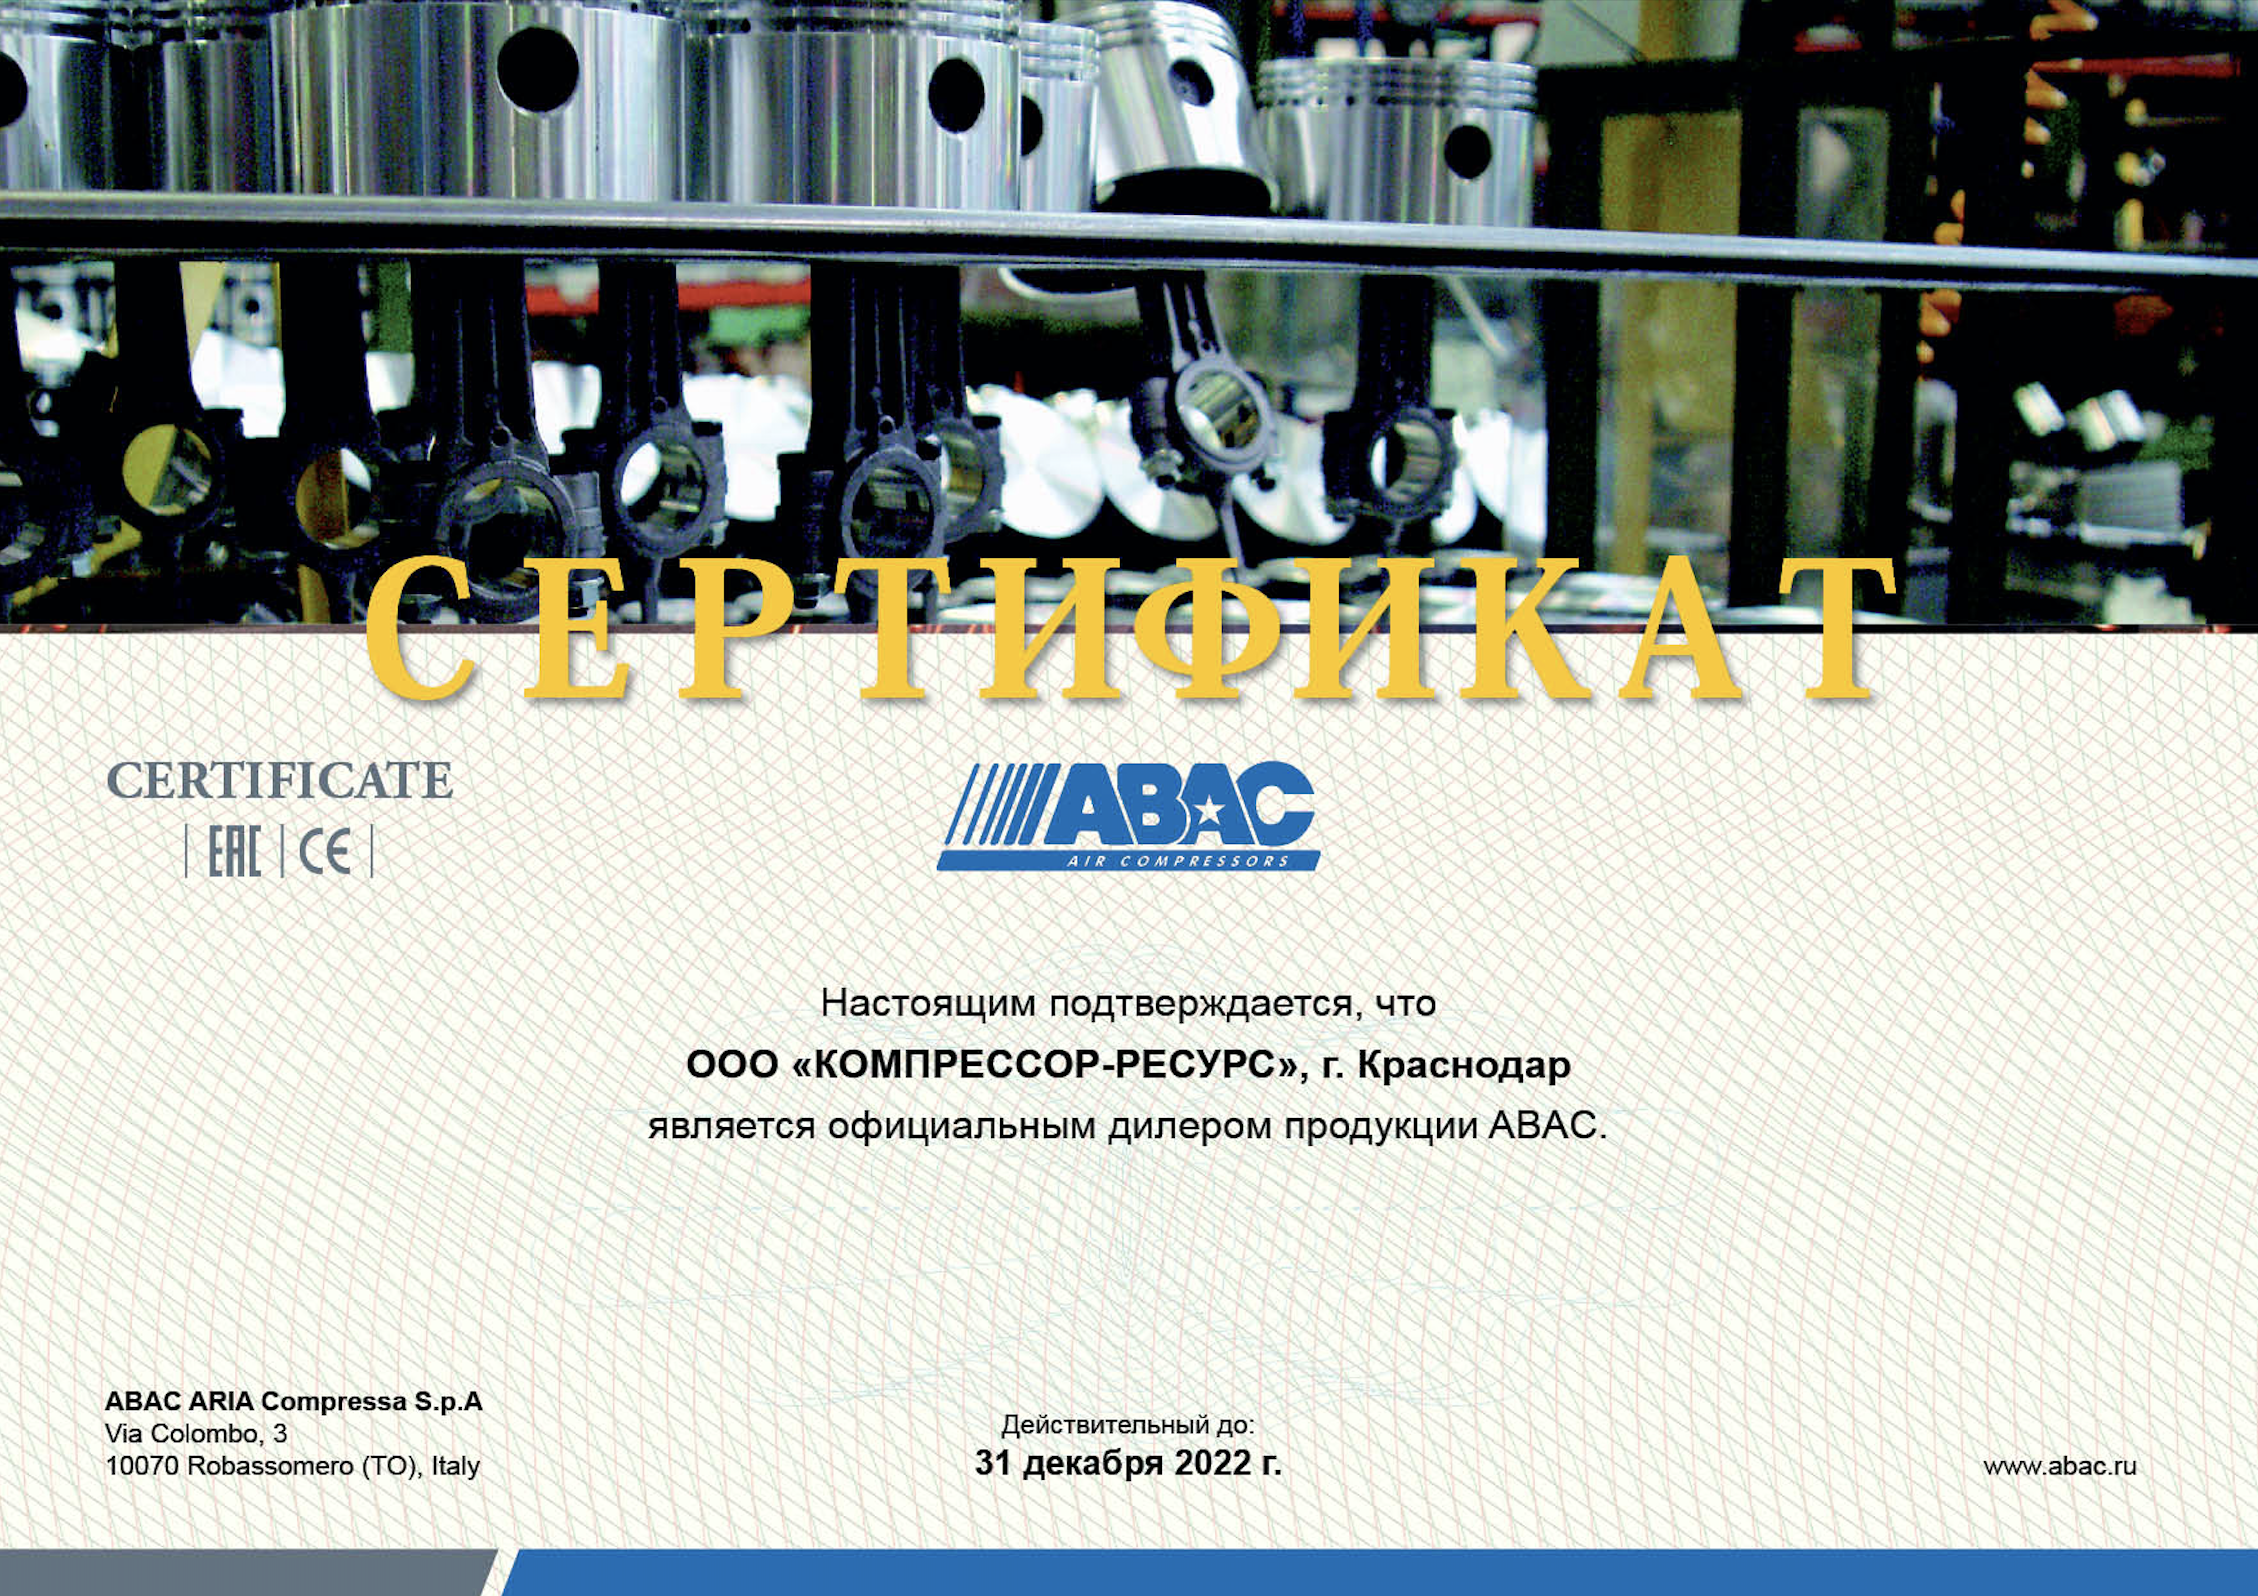 ООО "Компрессор-ресурс" является официальный дилер продукции ABAC